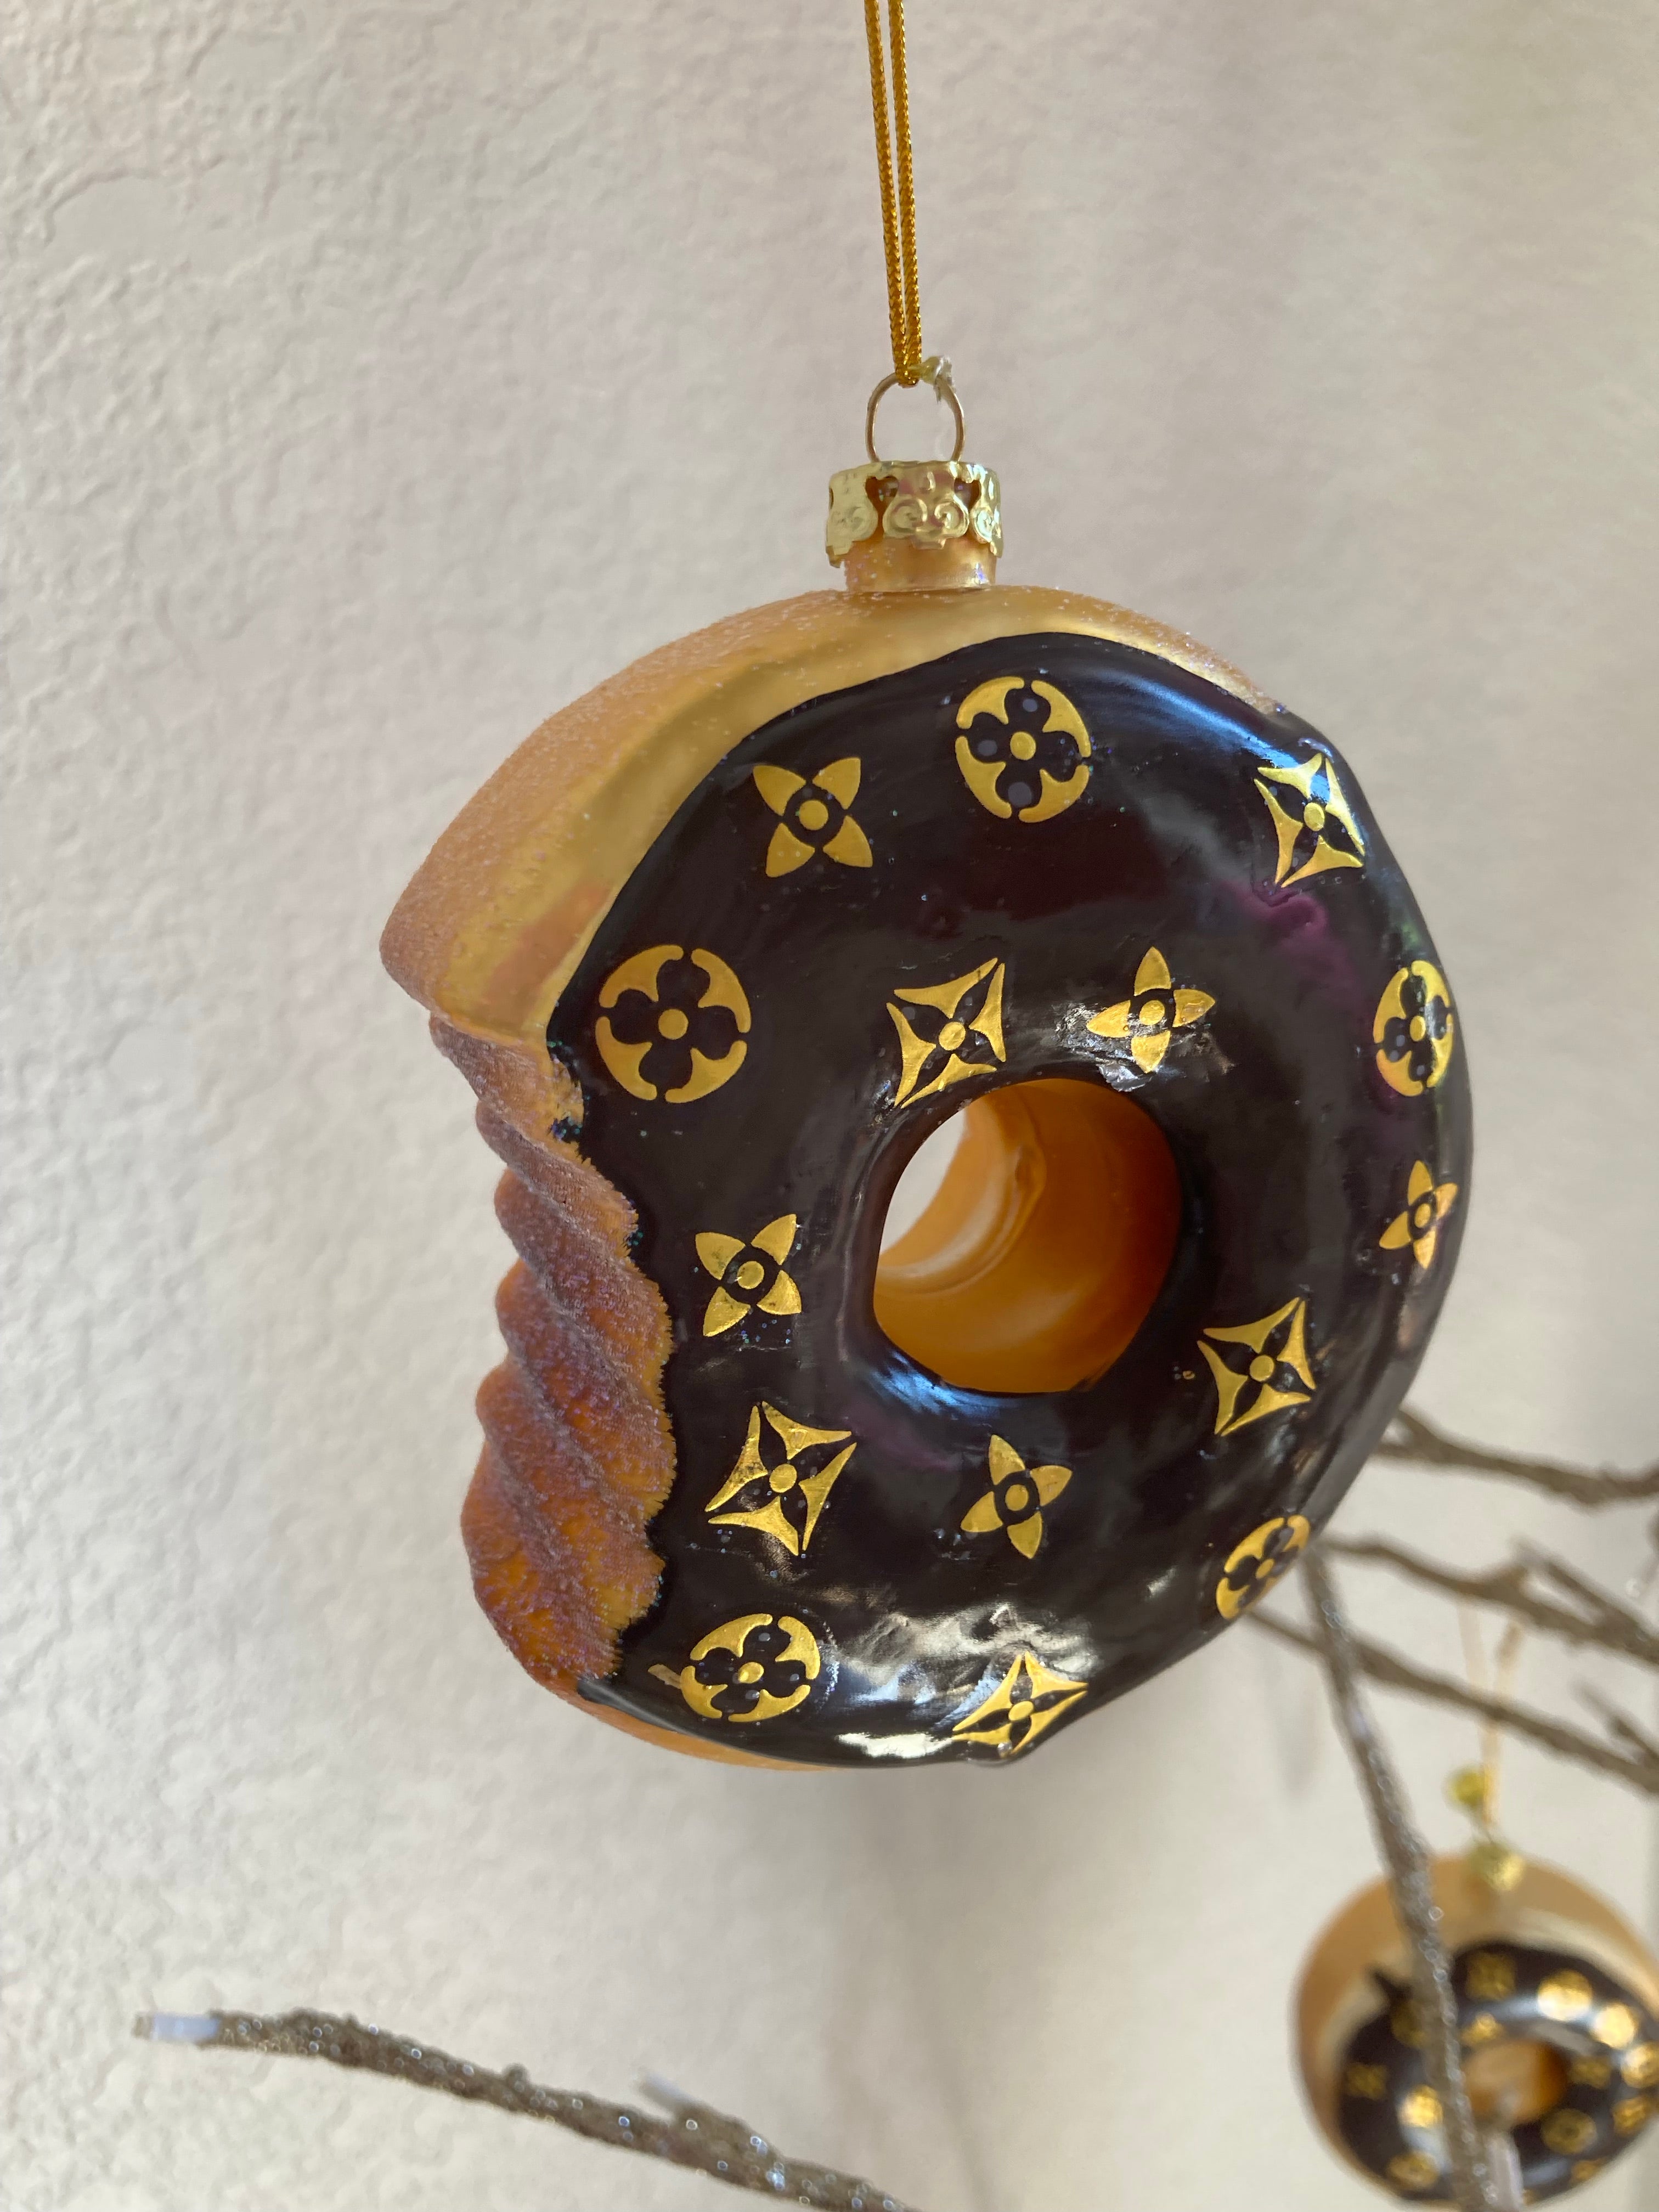 Louis Vuitton Christmas Ornaments